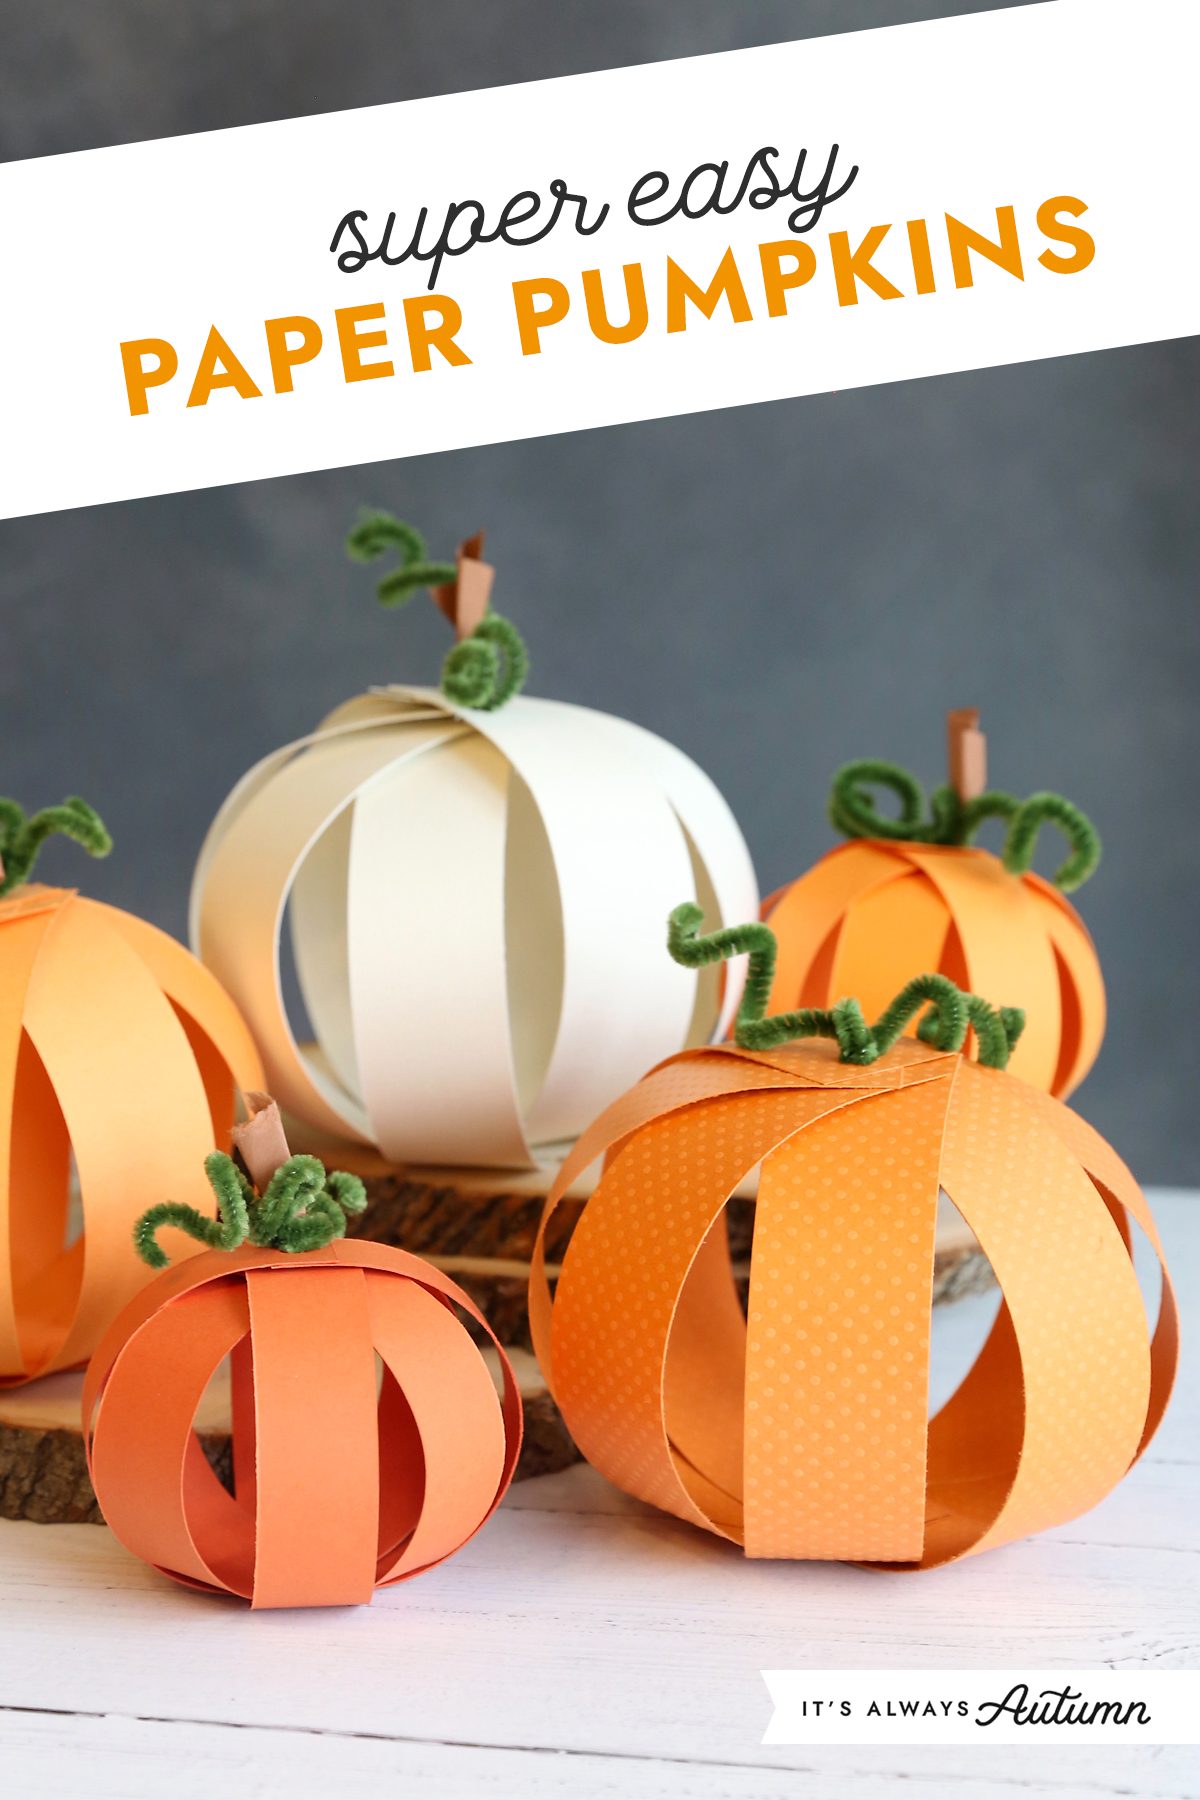 https://www.itsalwaysautumn.com/wp-content/uploads/2012/10/paper-pumpkins-tutorial.jpg